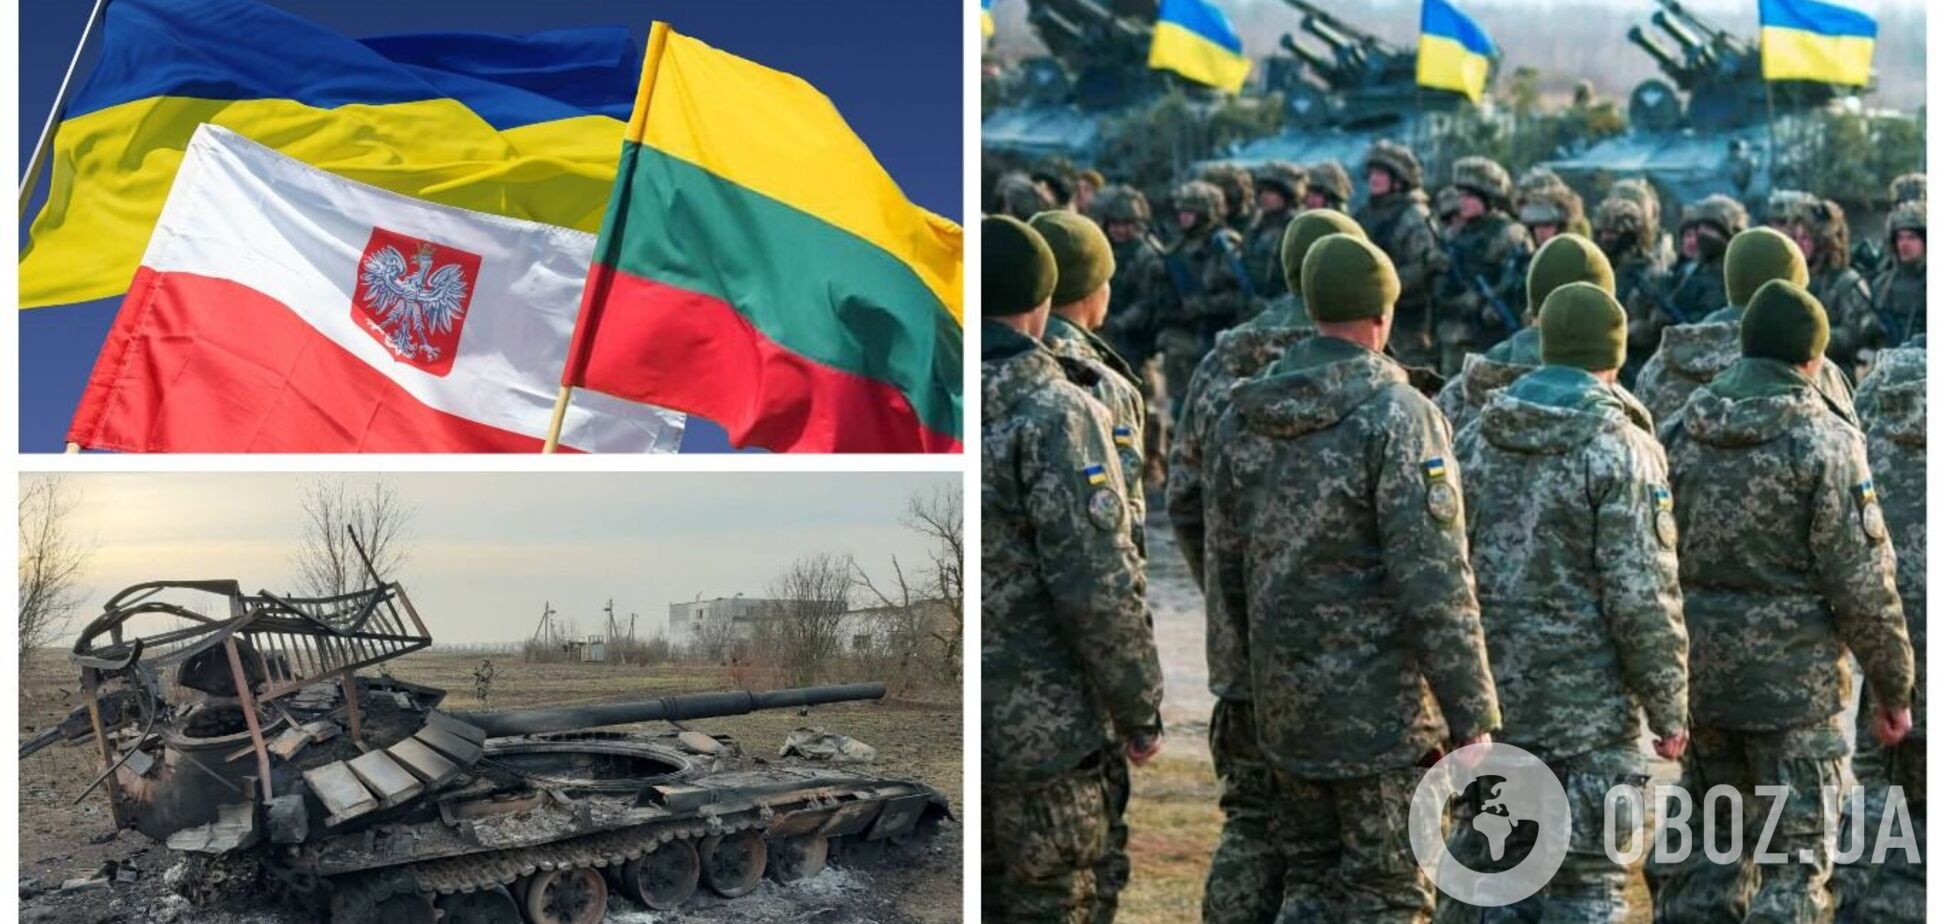 'Ми можемо завдати удару по імперії зла': дипломати Люблінського трикутника закликали Захід збільшити підтримку України